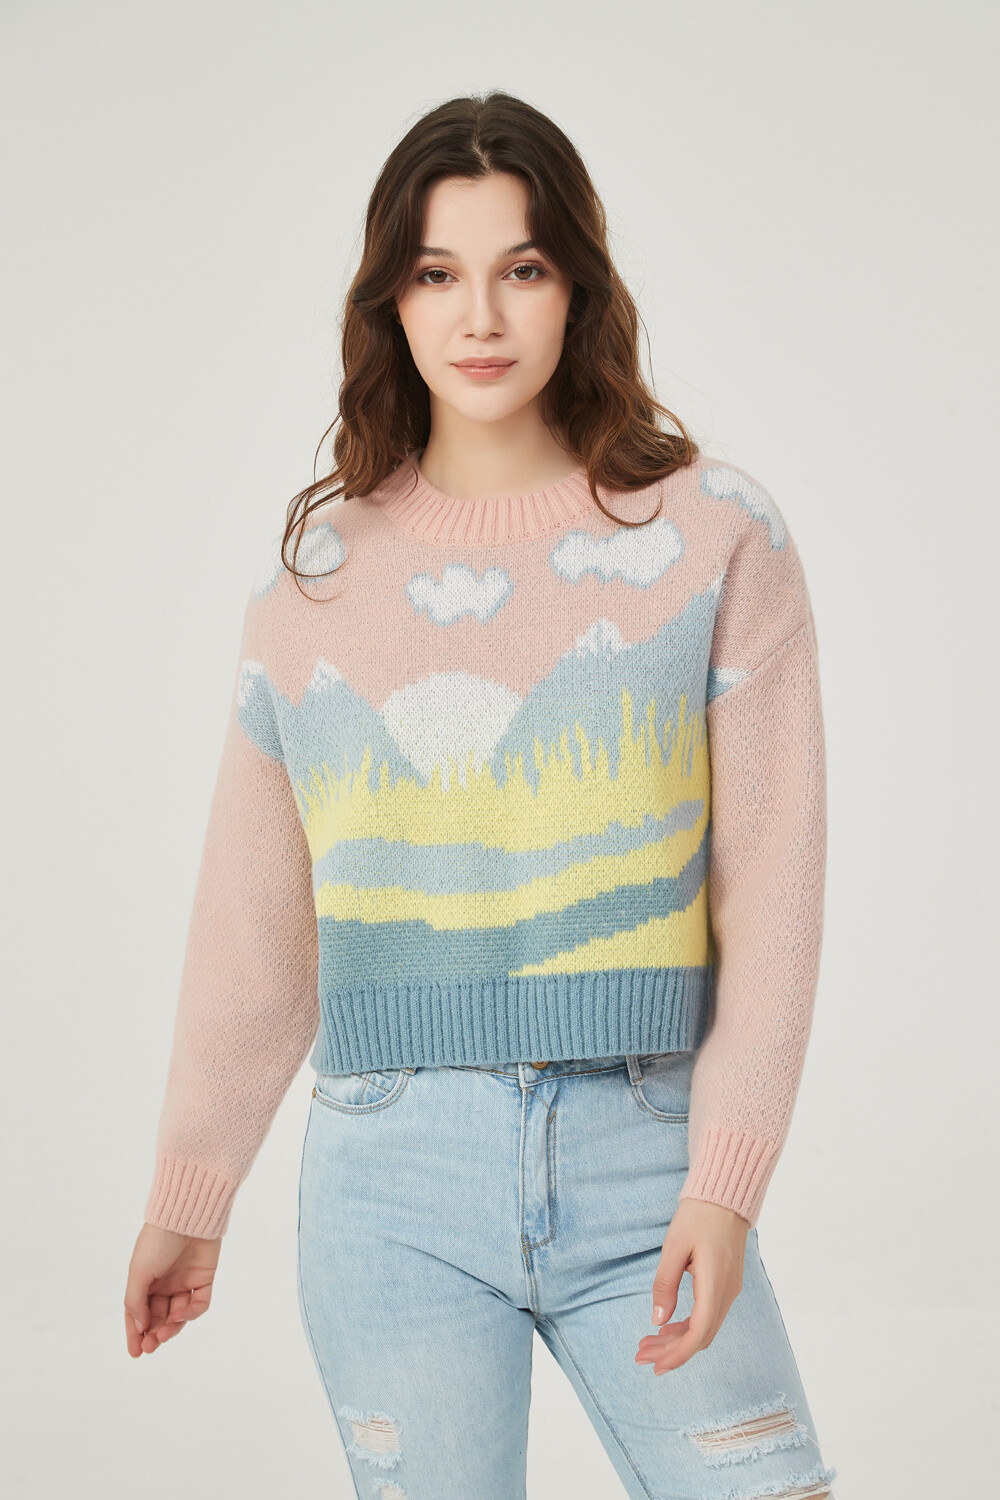 Sweater Umi Estampado 1